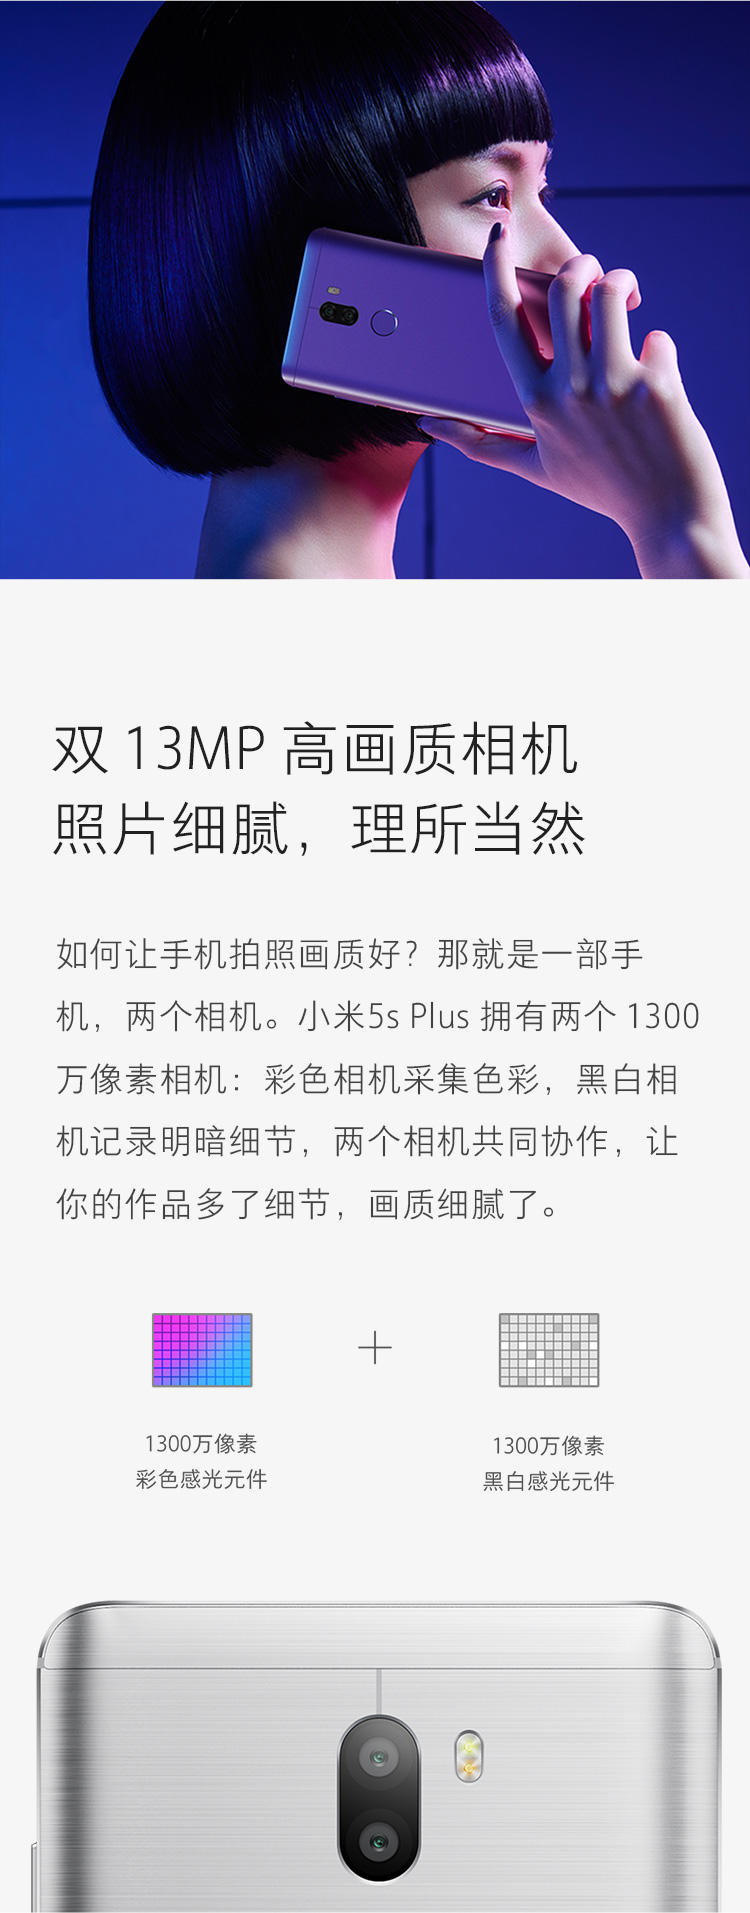  小米5S Plus 4G手机 双卡双待 金色/银色 全网通 标准版(4G RAM+64G ROM)